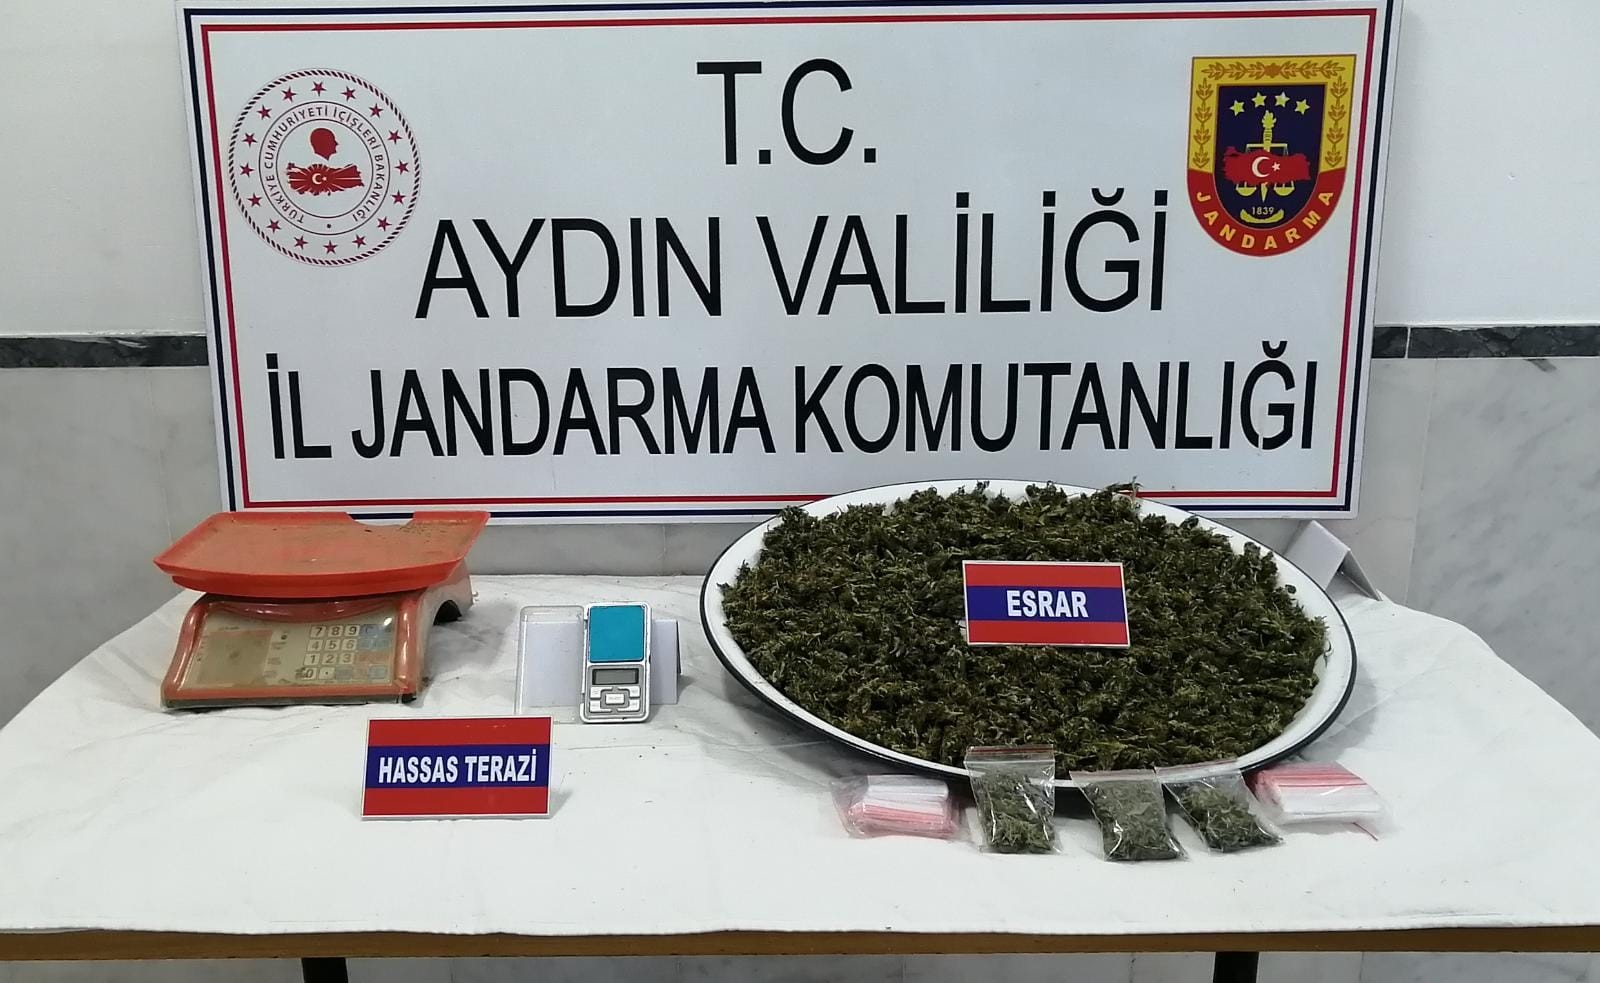 Aydın'da uyuşturucudan 9 şahıs tutuklandı